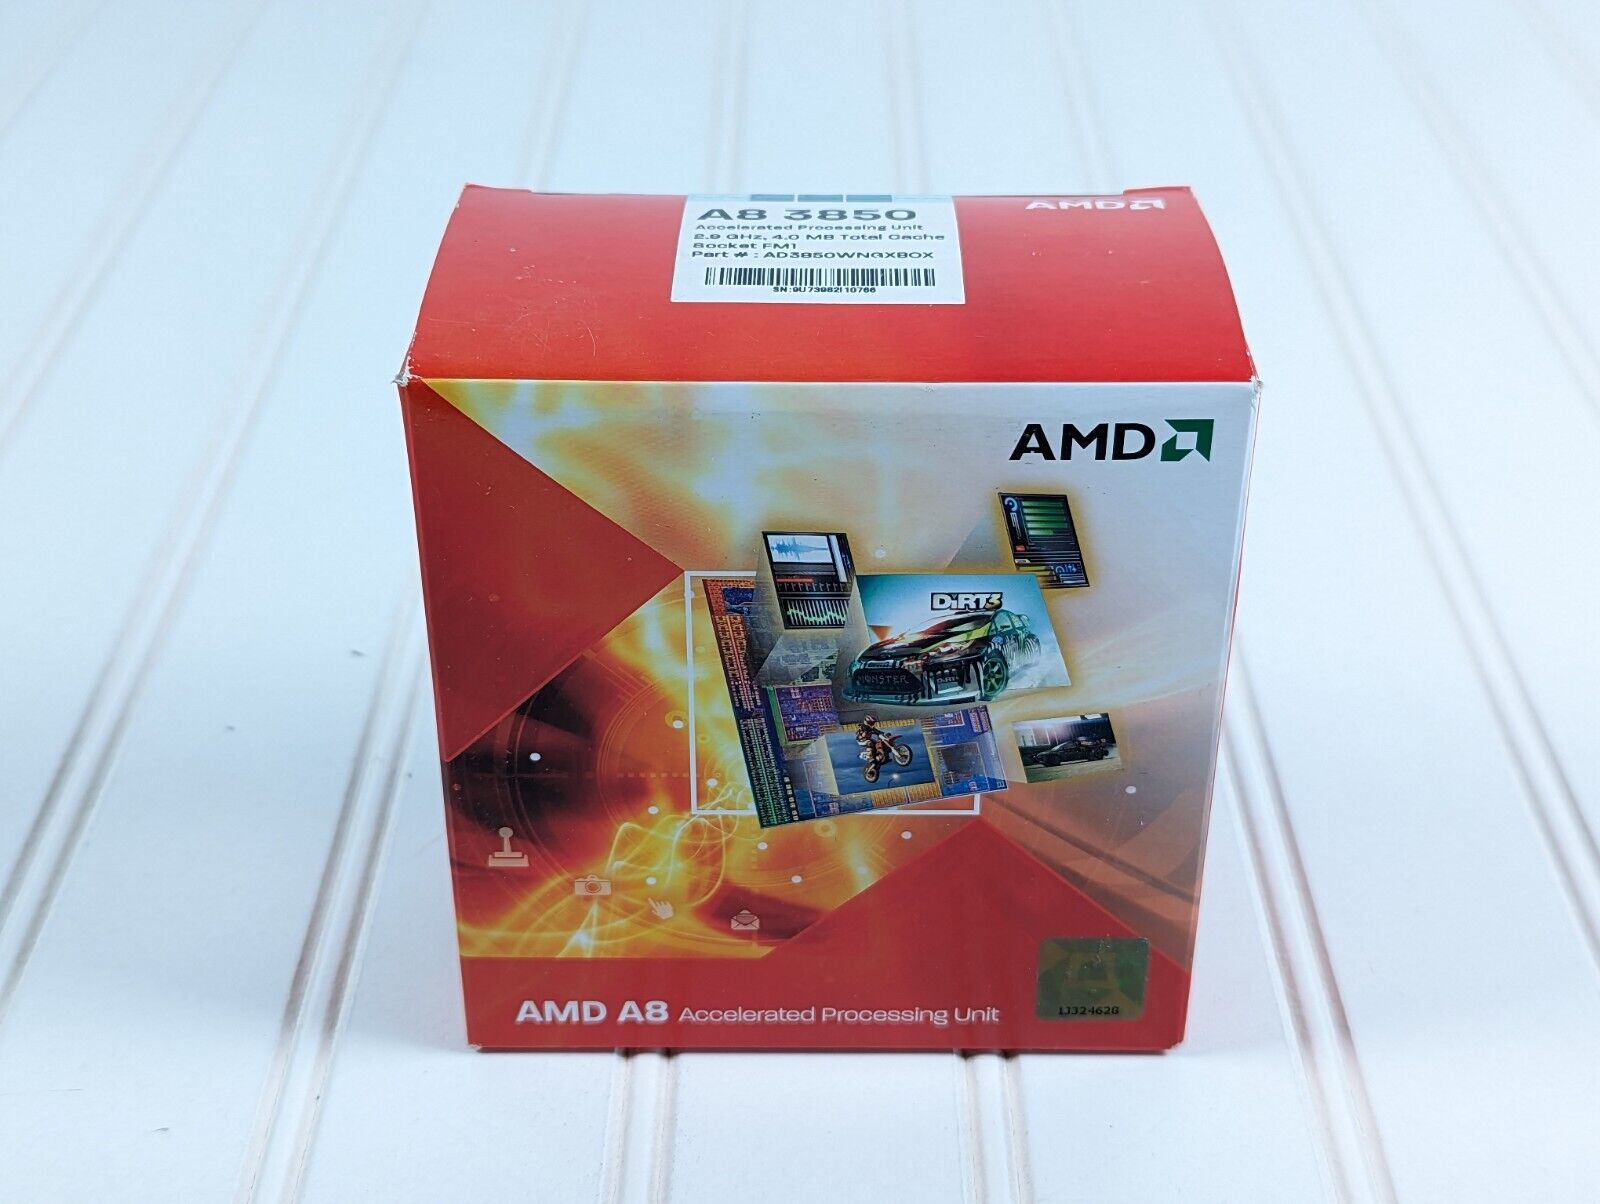 AMD A8-3850 2.9GHz 4.0MB Cache Quad-Core Processor New in Box 